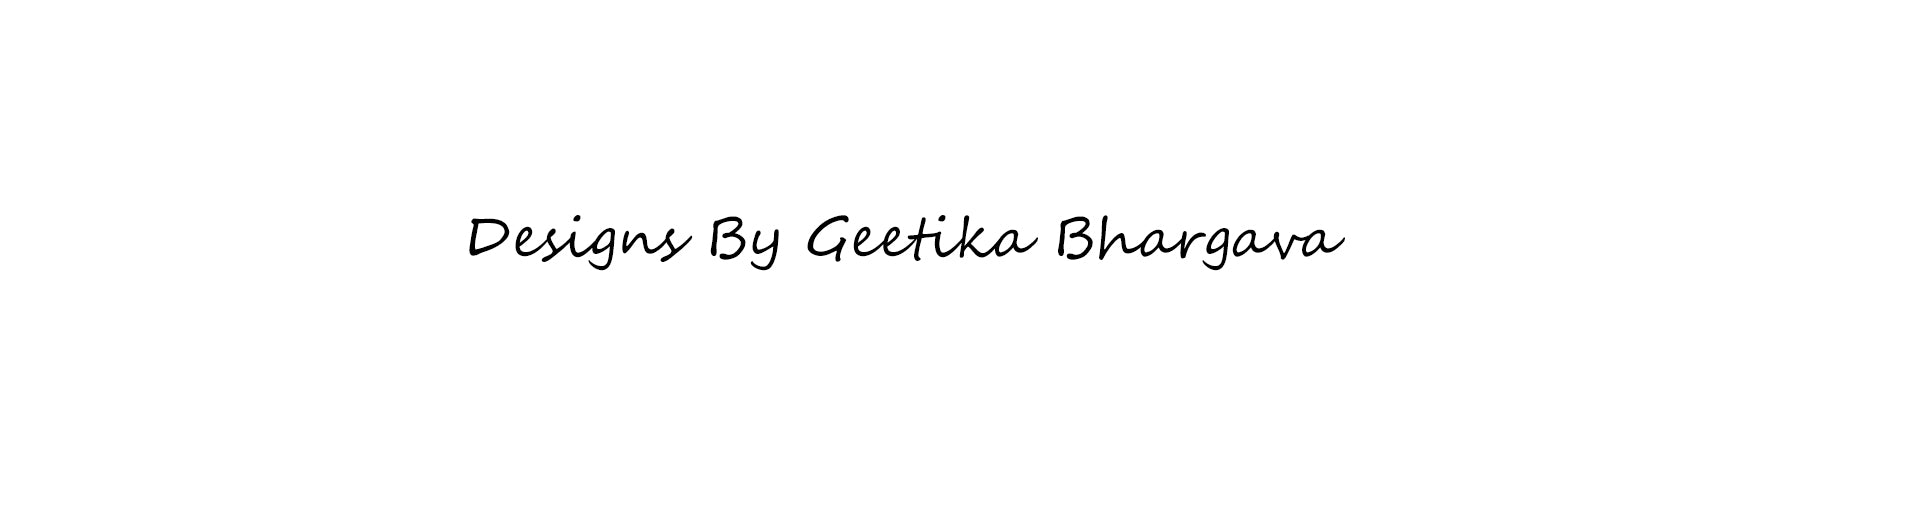 Geetika Bhargava